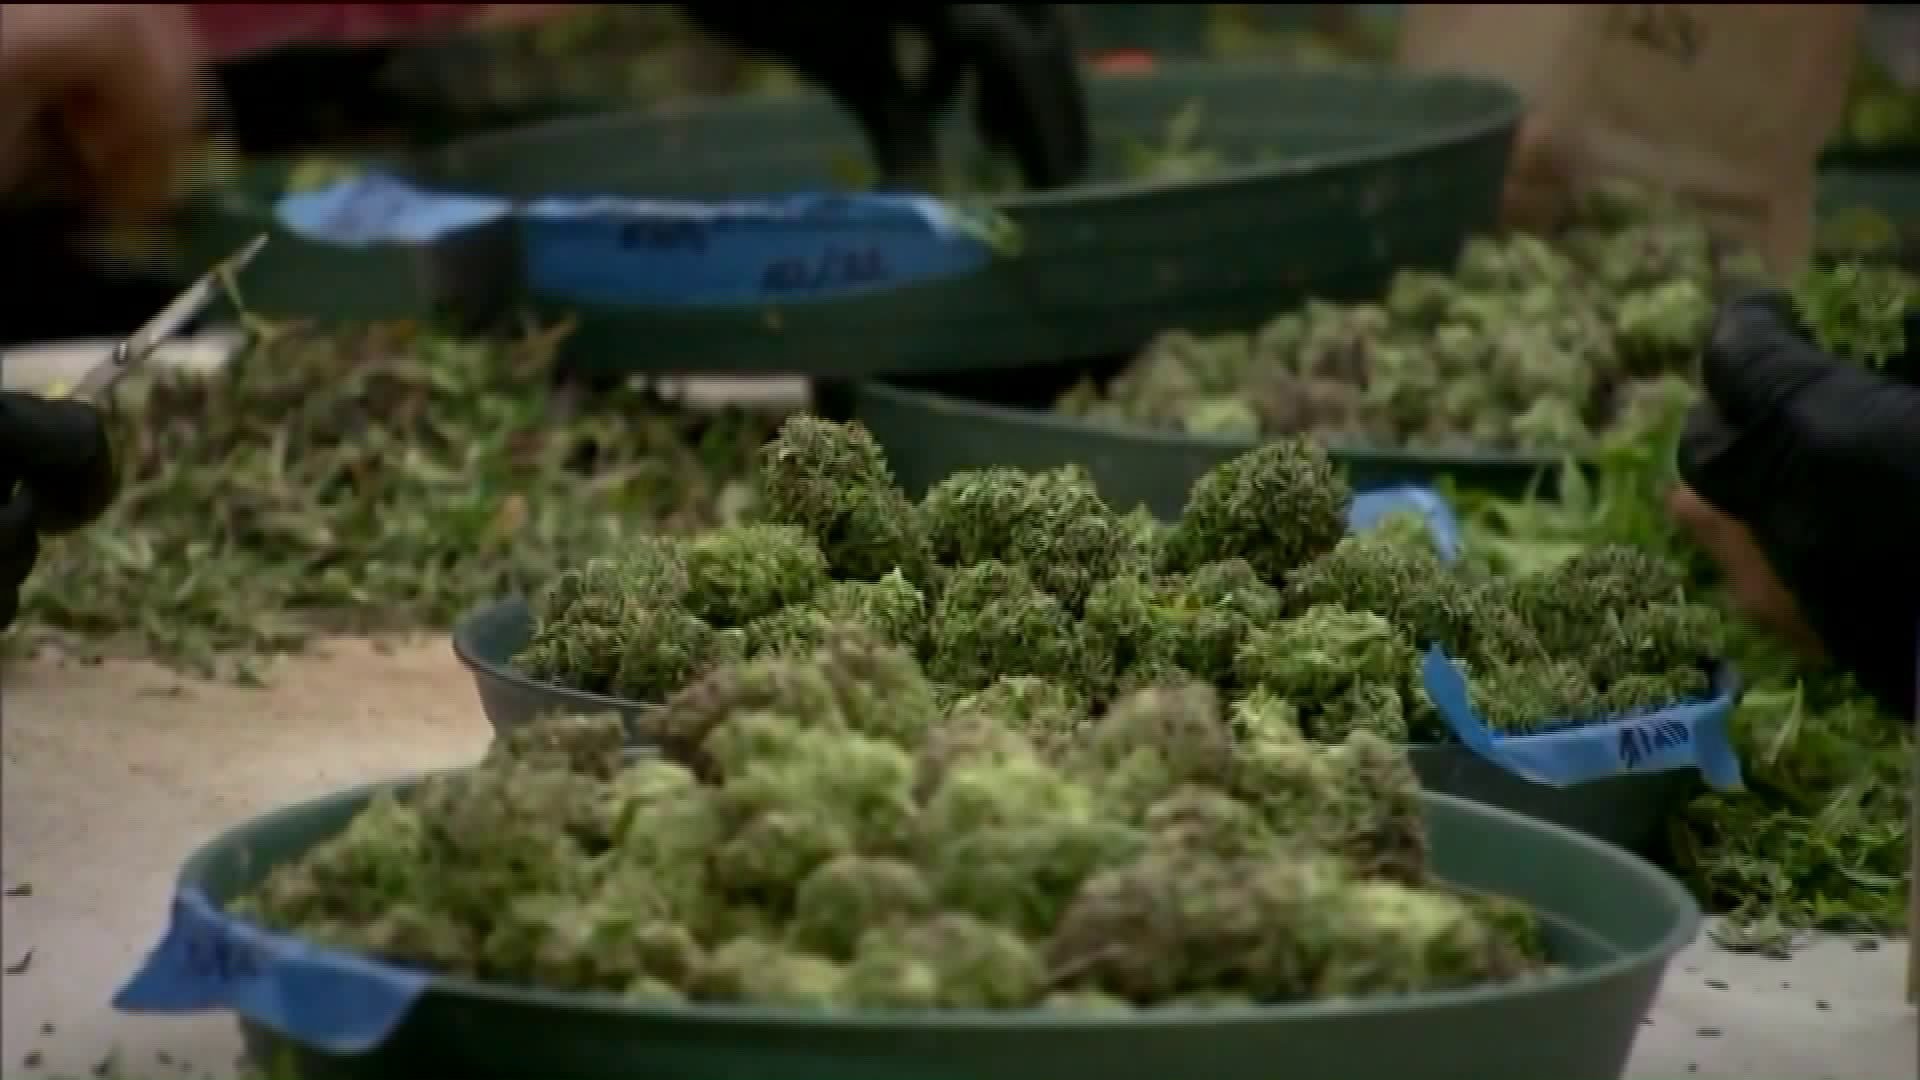 Should Connecticut legalize recreational cannabis?